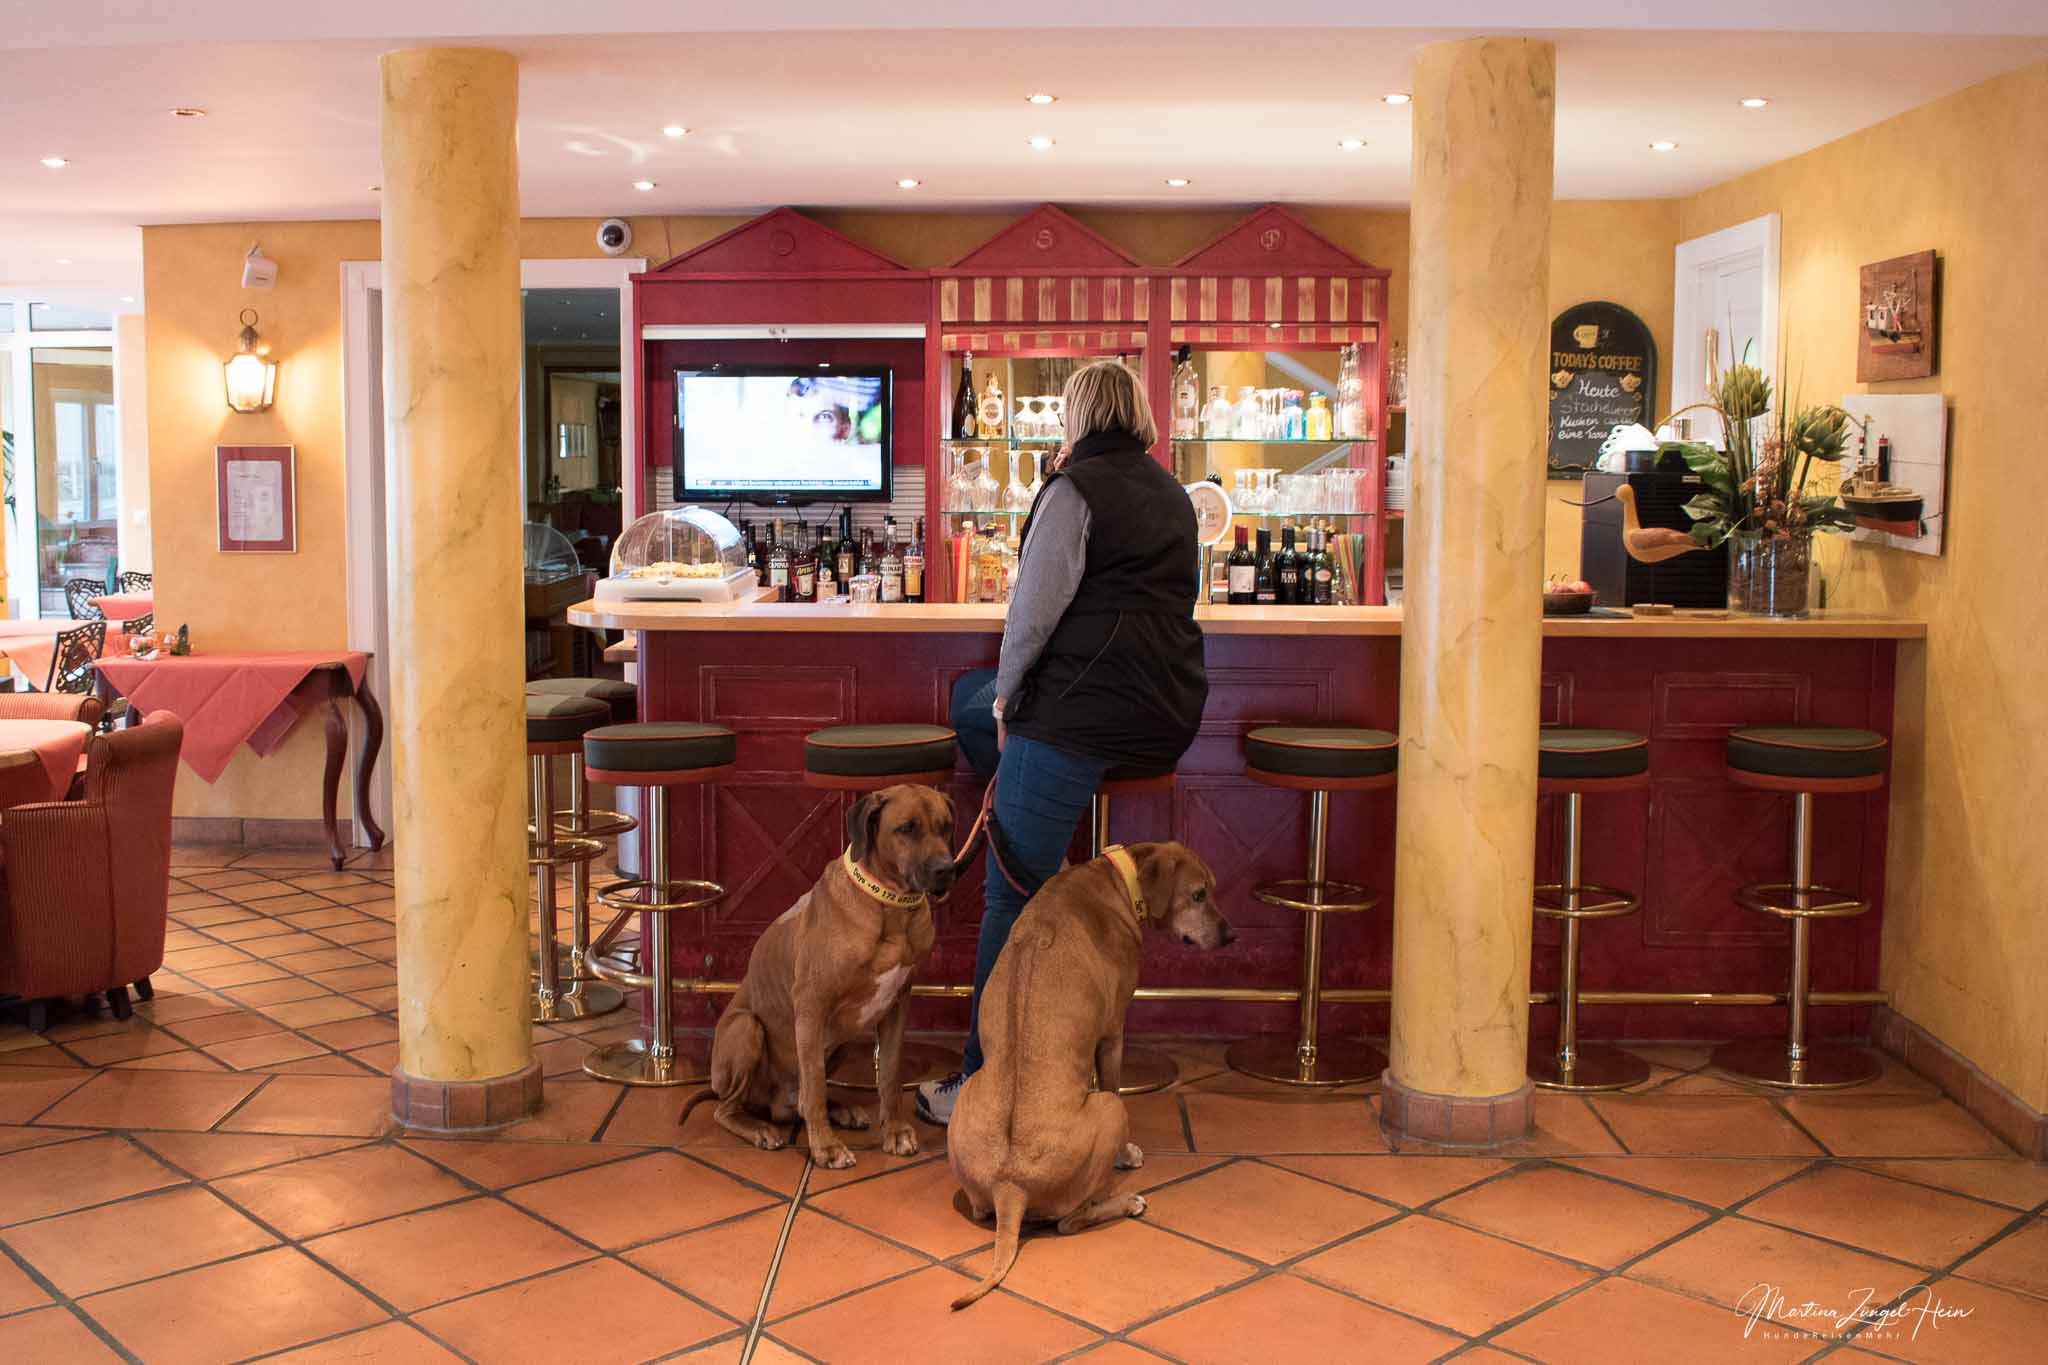 Das Strandhotel Sylt in Westerland - Hunde herzlich willkommen